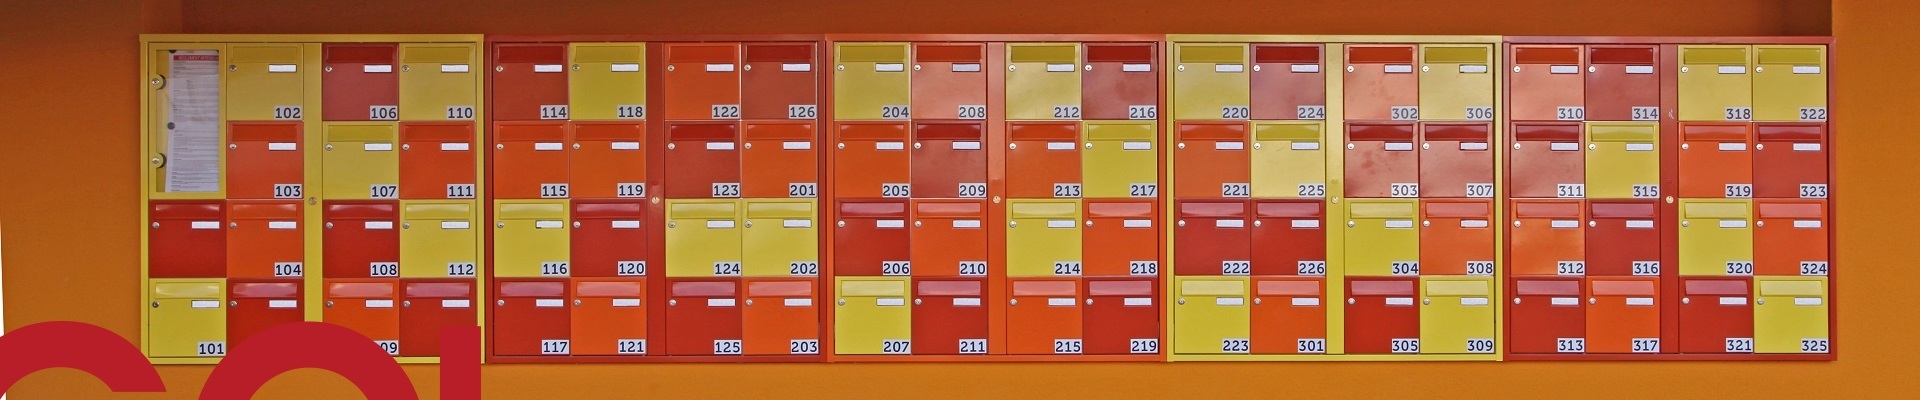 Briefkastenwand mit nummerierten Briefkästen in rot, orange und gelb